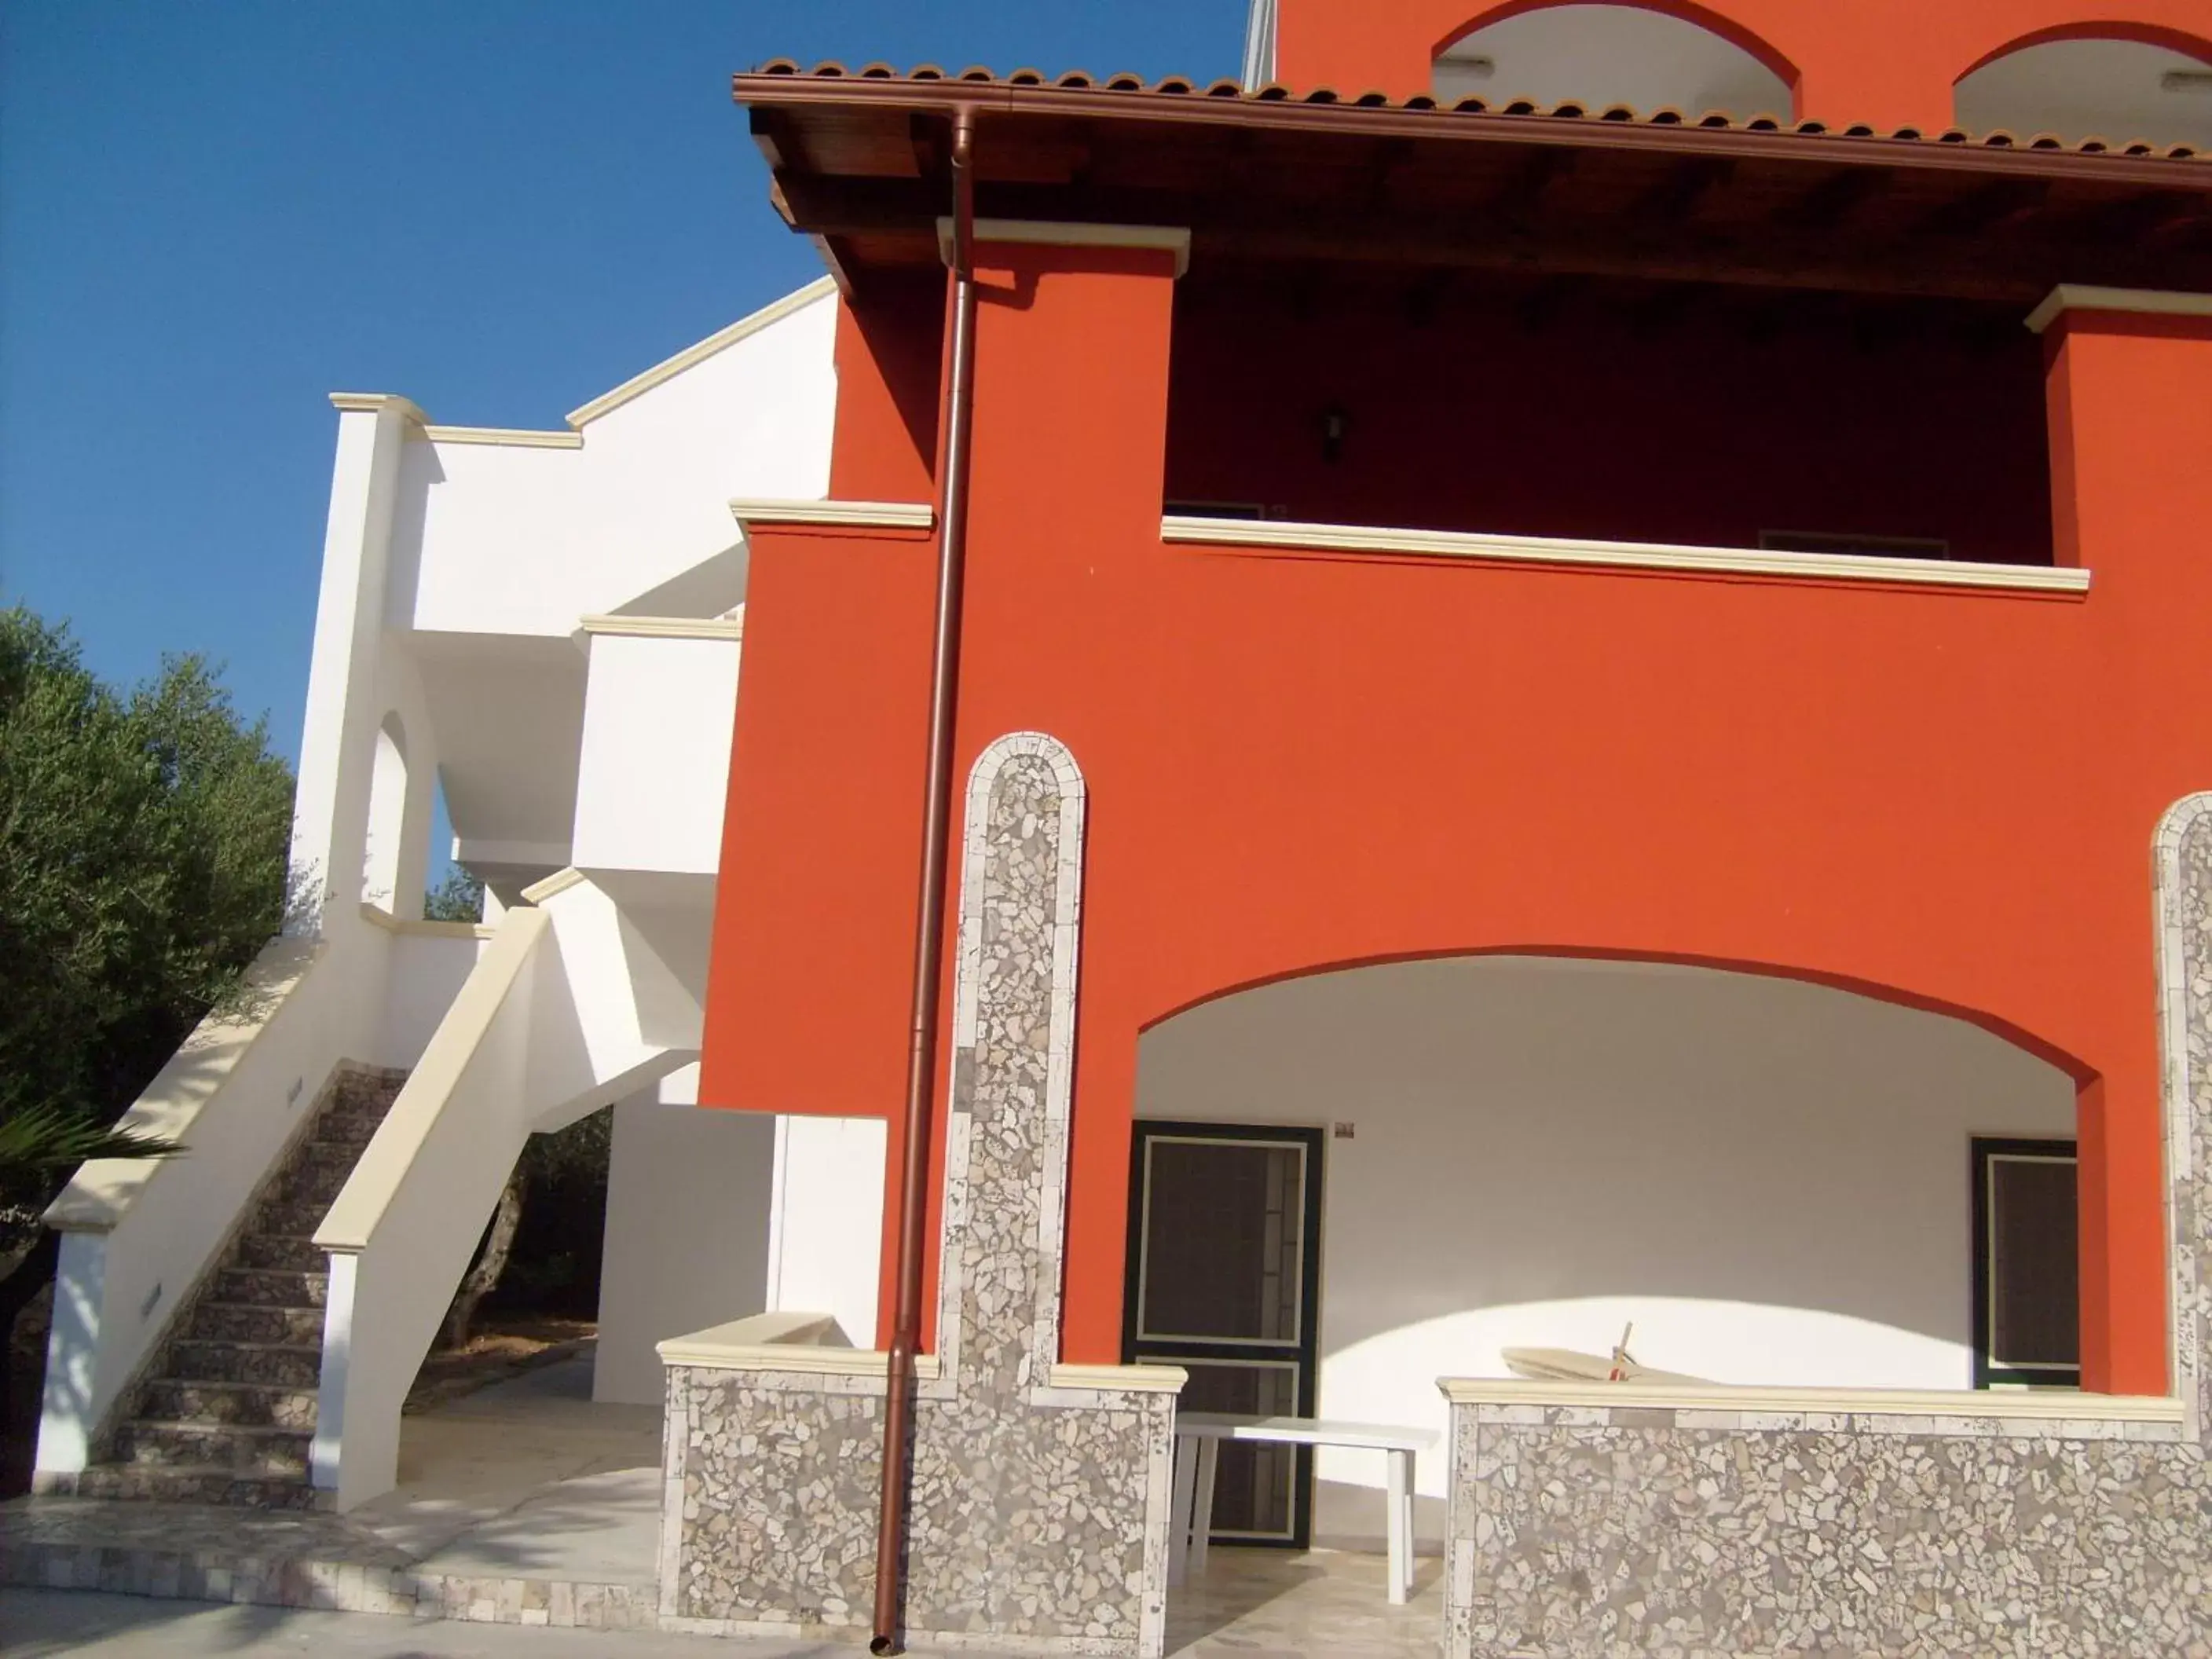 Facade/entrance, Property Building in B&B La Seta Rossa